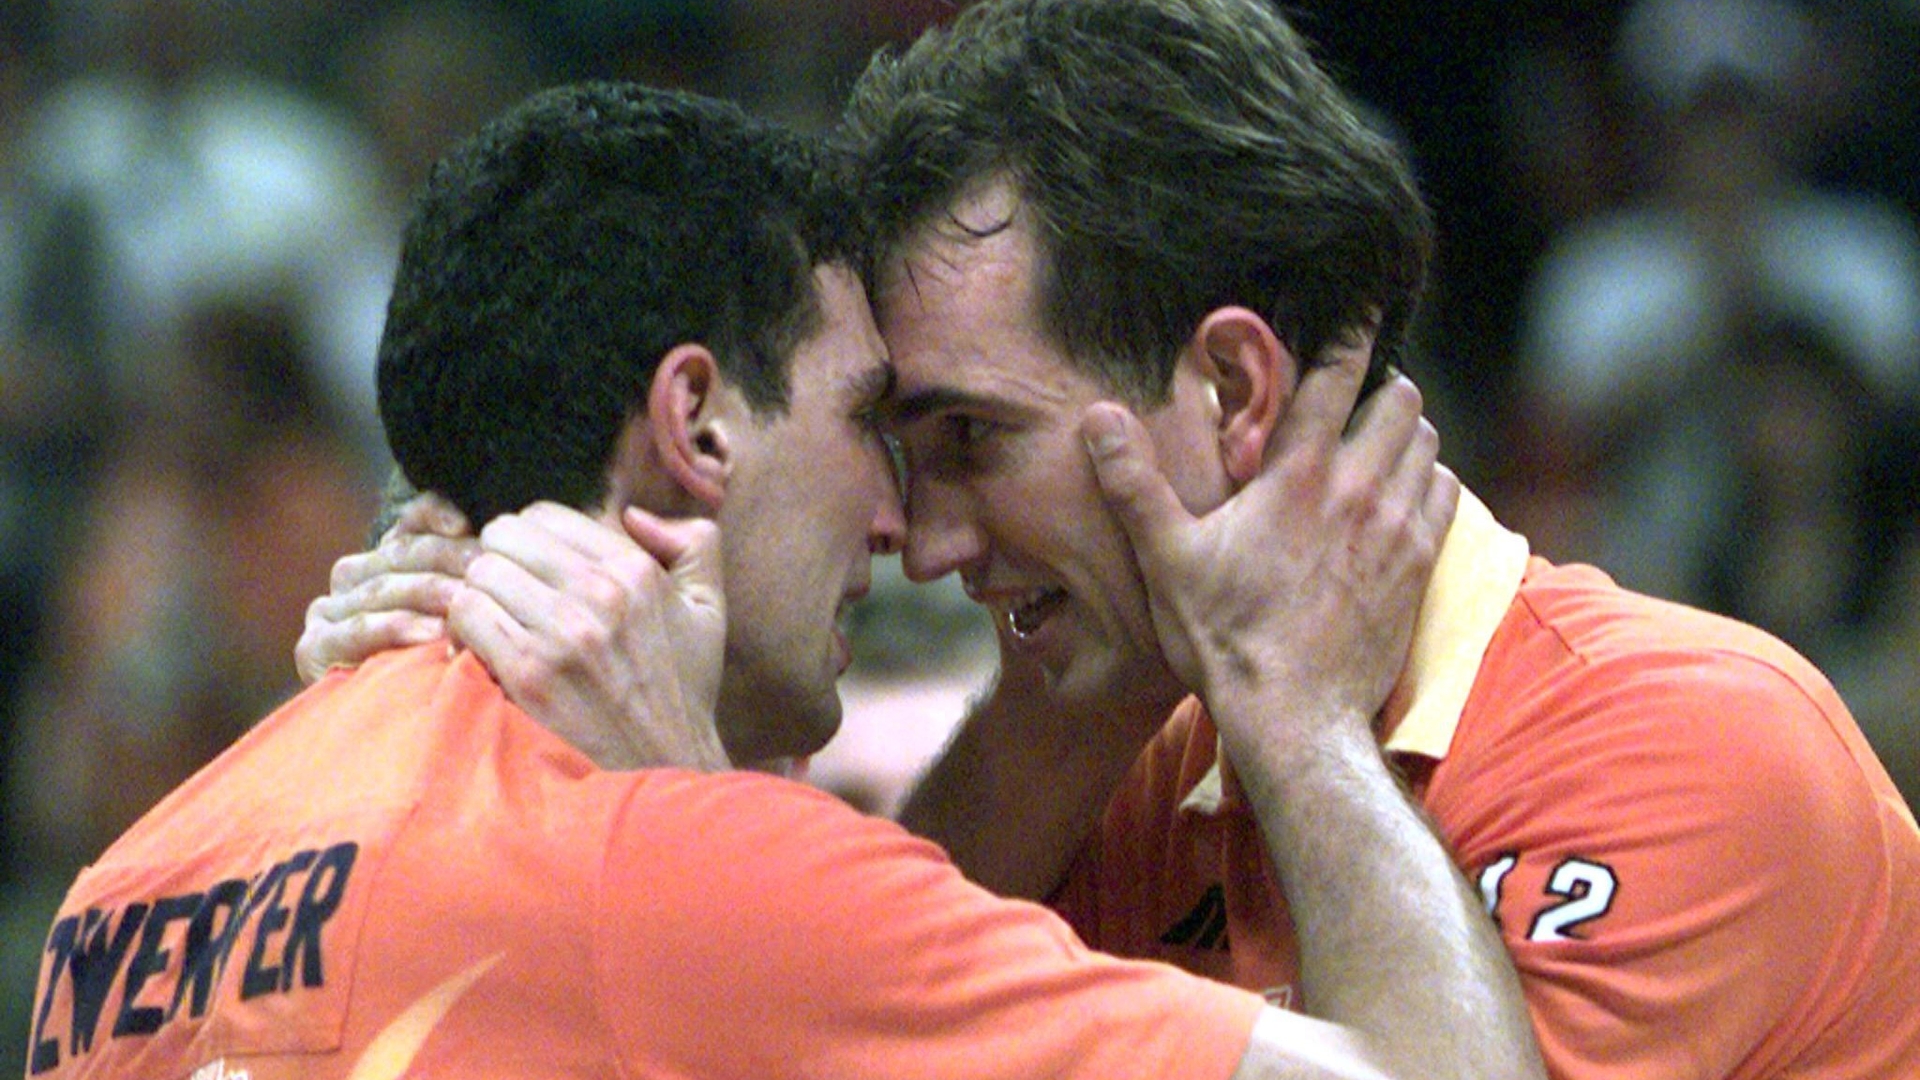 Ron Zwerver (L) en Peter Blange emotioneel na afloop van de gewonnen wedstrijd tegen Italie. De Nederlanse volleyballers veroverden zondag het olympisch goud door de finale te winnen met 3-2.